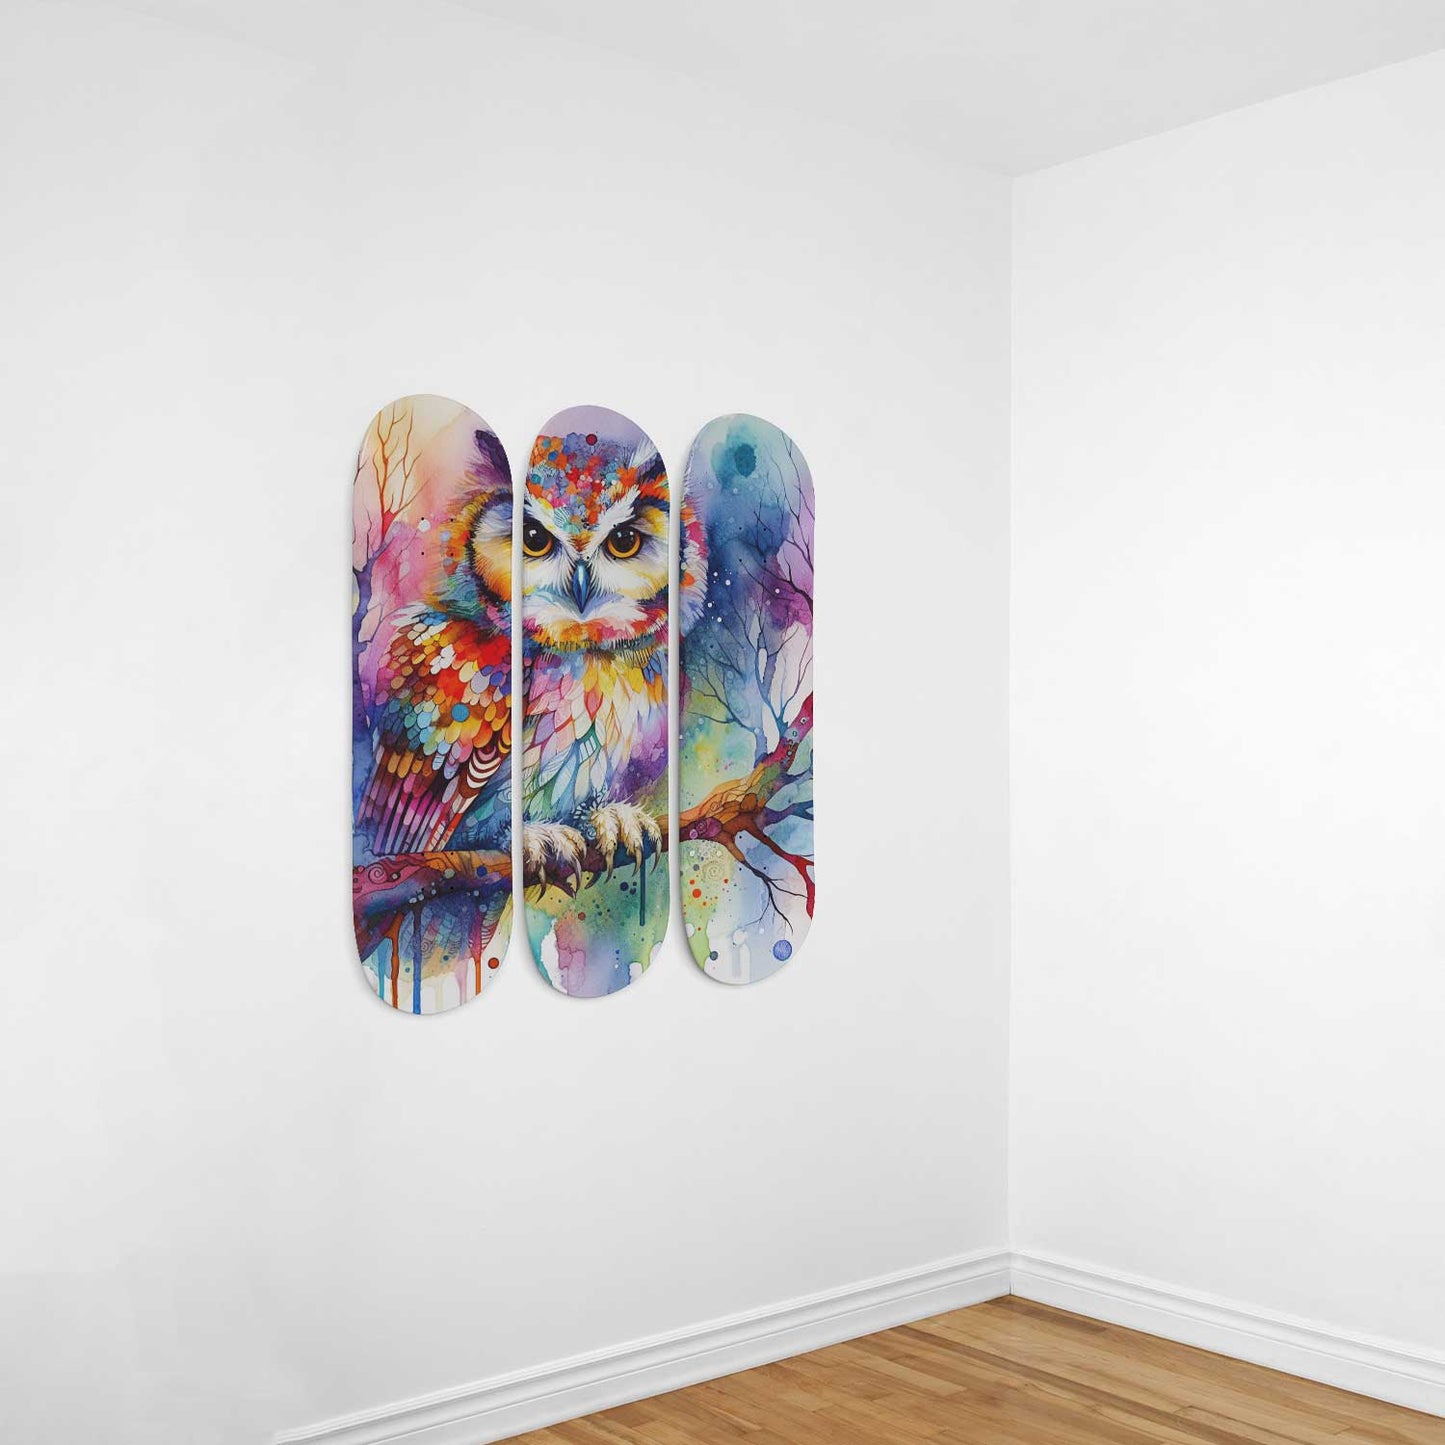 Owl #2.0 3-Deck Skateboard Wall Art